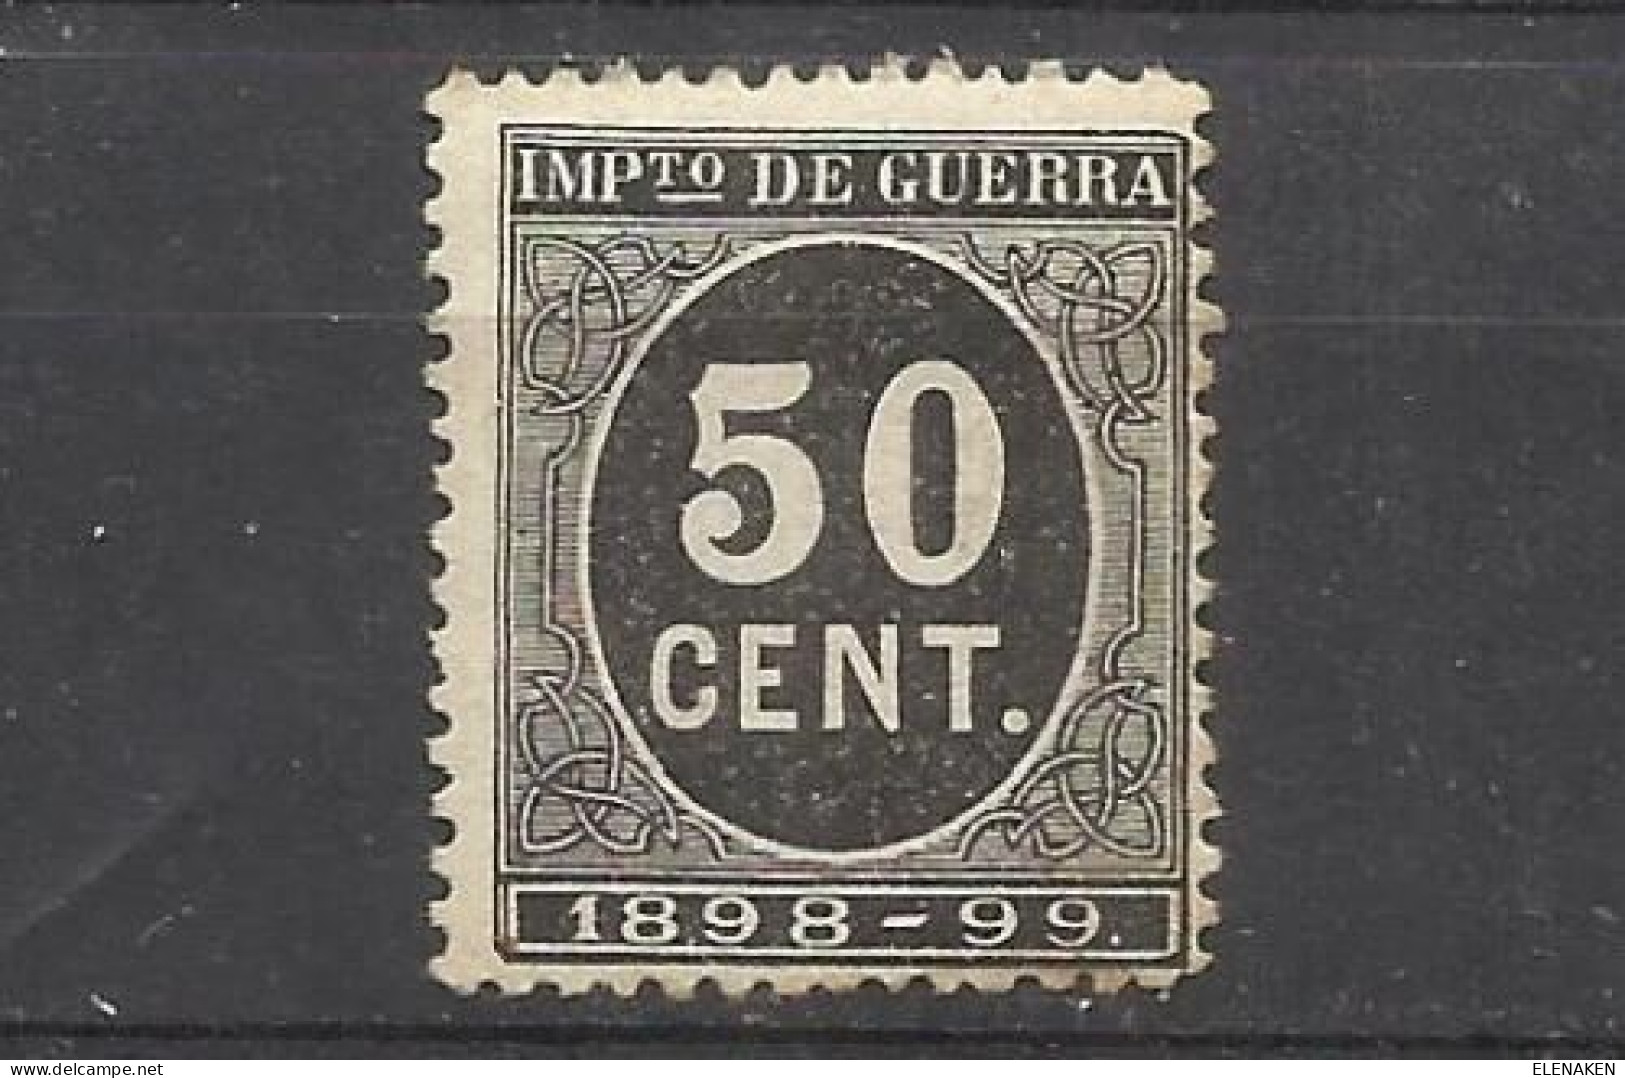 2100B -SELLO IMPUESTO DE GUERRA FISCAL AÑO 1898-1898,PARA SUFRAGAR LAS COSTAS DE LAS GUERRAS EN ULTRAMAR.SPAIN REVENUE - Oorlogstaks